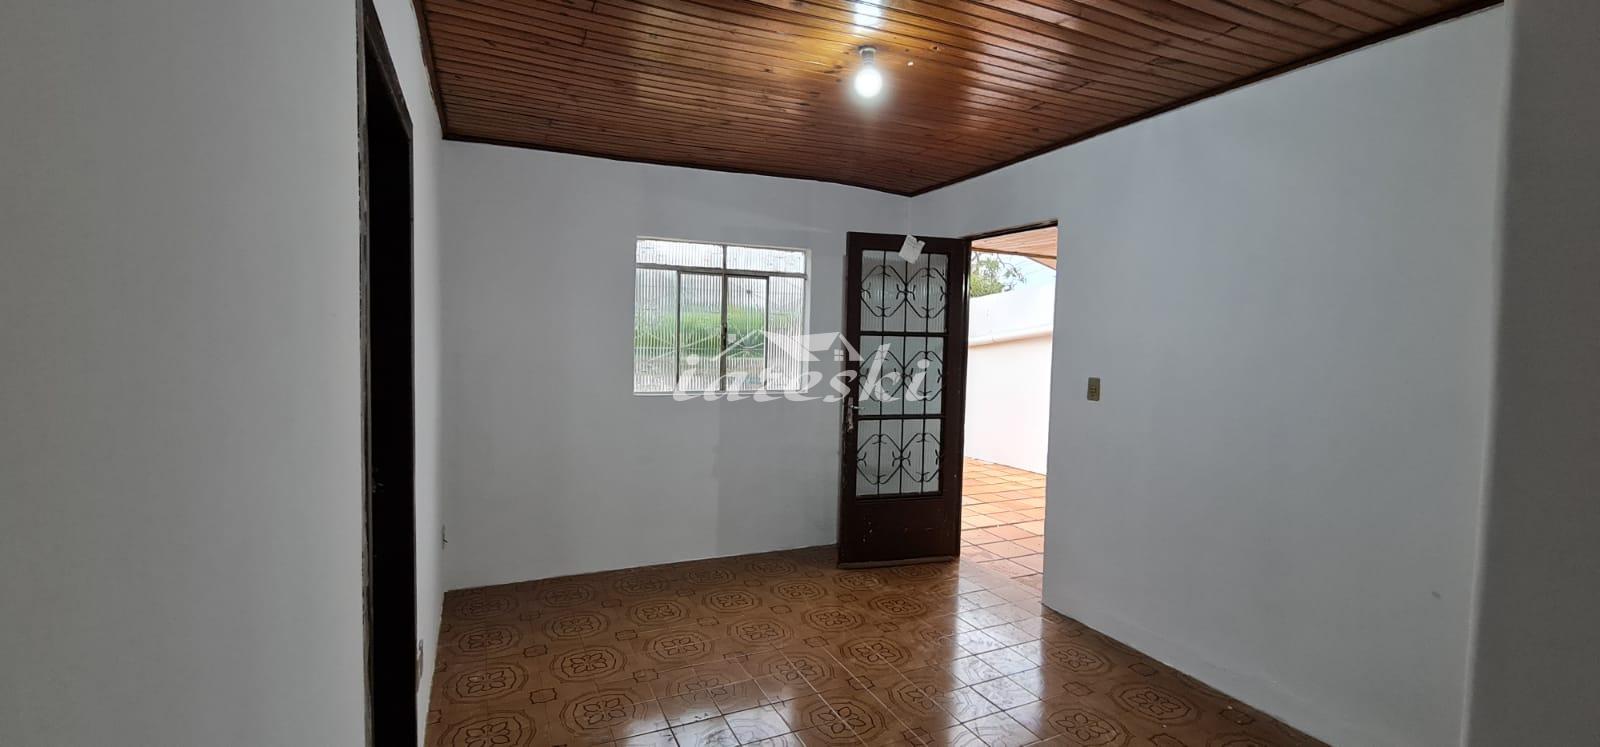 Casa com 3 dormitórios para locação Jardim Lancaster em Foz do Iguaçu/PR